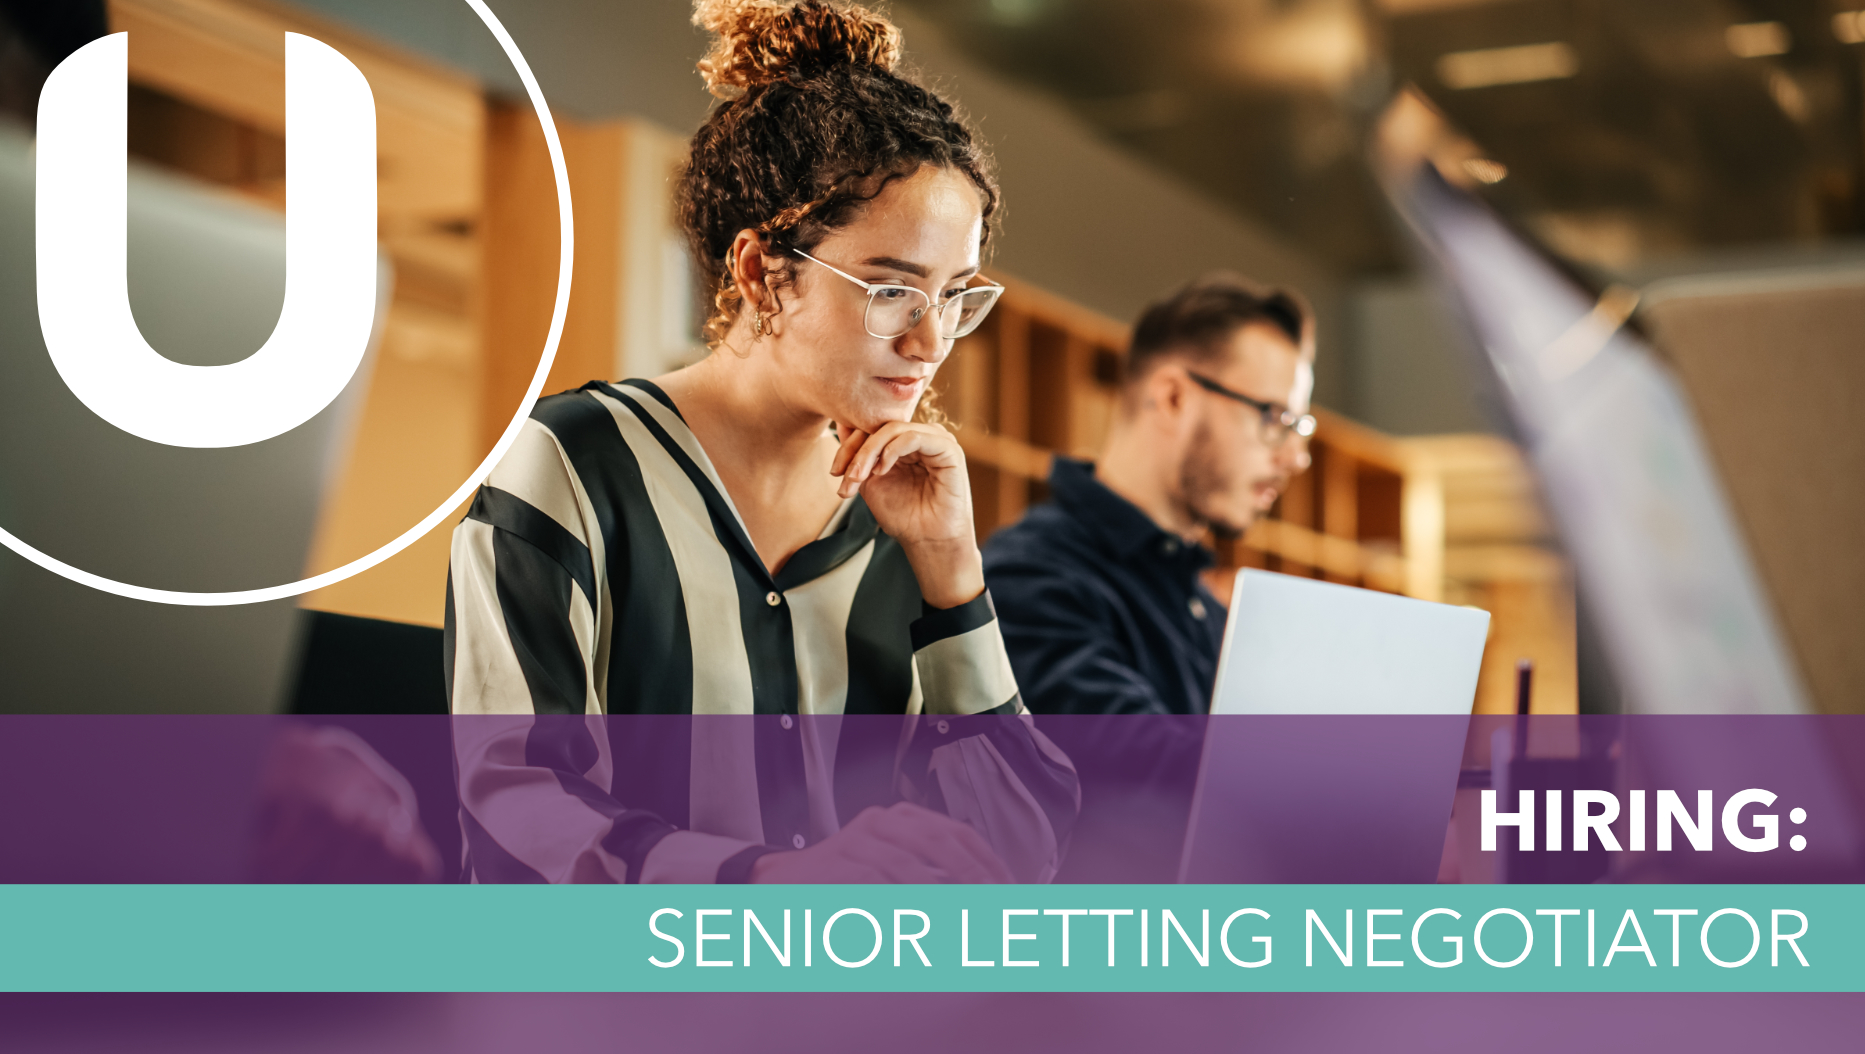 Hiring: Senior Letting Negotiator